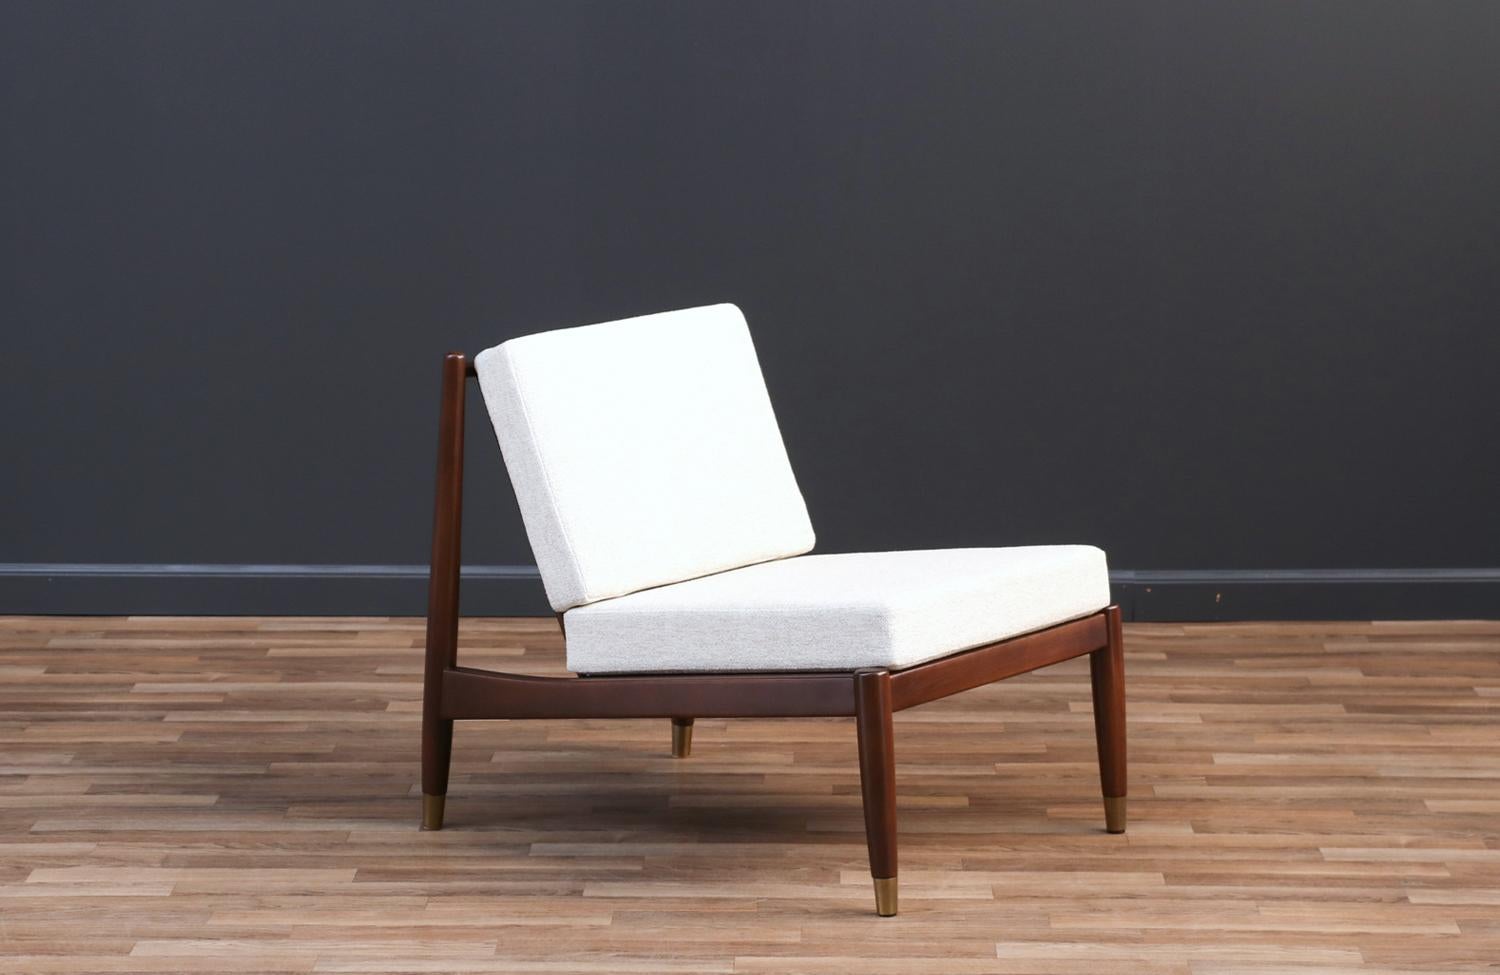 Folke Ohlsson Slipper Lounge Chair für DUX.

________________________________________

Die Umgestaltung eines Mid-Century Modern-Möbels ist wie die Wiederbelebung der Geschichte, und wir gehen diese Reise mit Leidenschaft und Präzision an. Mit mehr